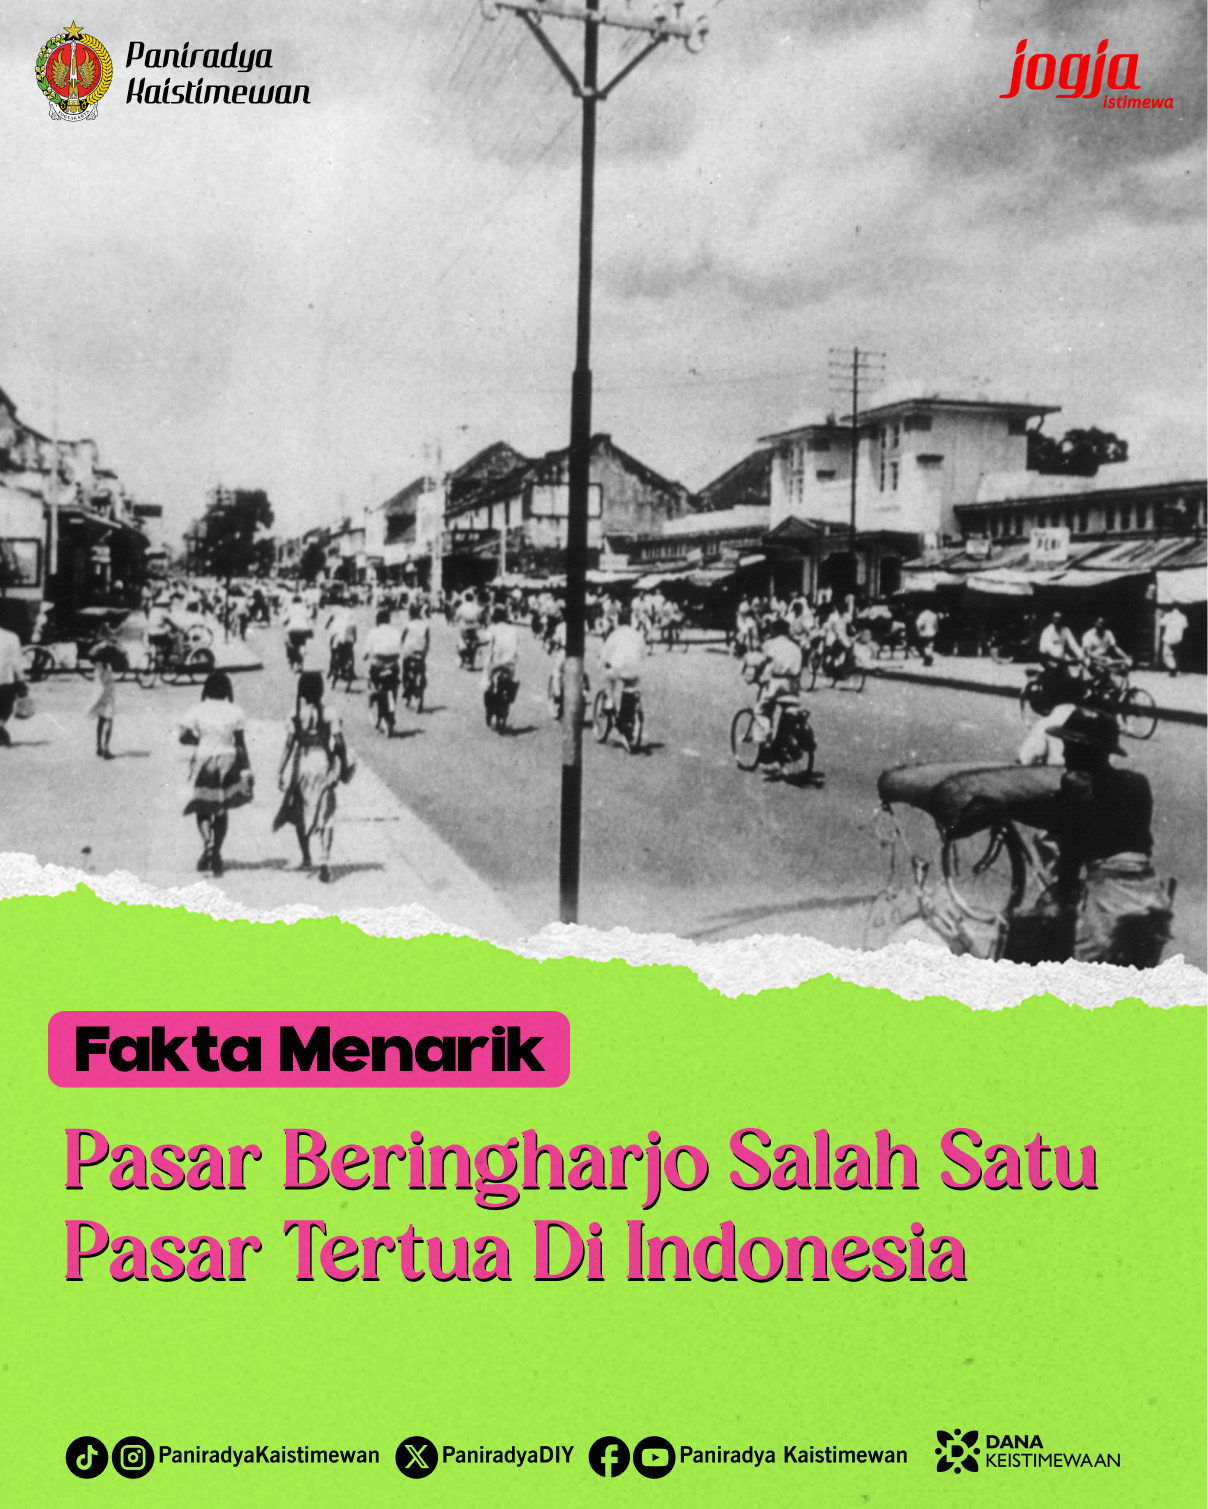 Fakta Menarik - Pasar Beringharjo Salah Satu Pasar Tertua di Indonesia 